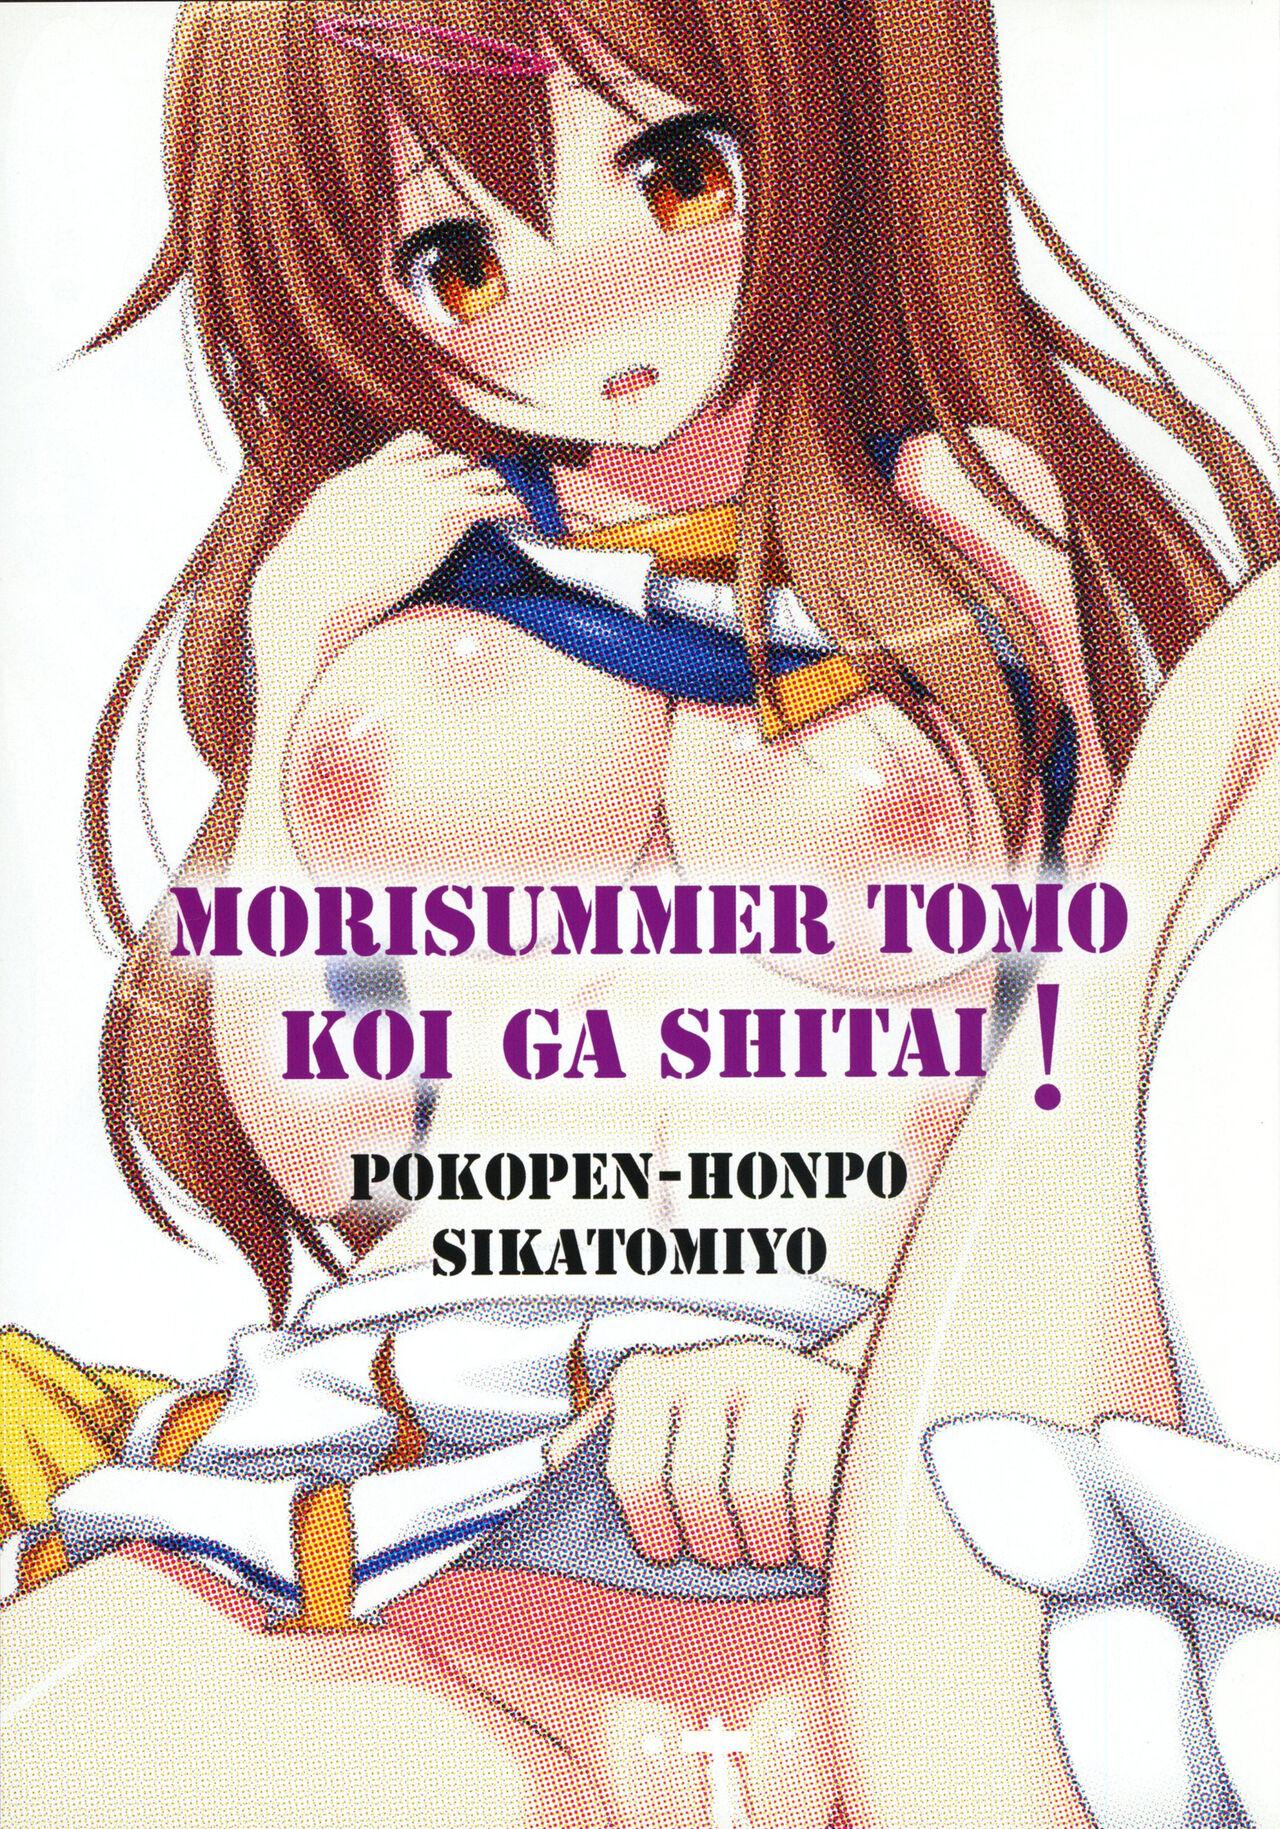 Butt Fuck MoriSummer tomo KOI ga shitai - Chuunibyou demo koi ga shitai Italian - Picture 2